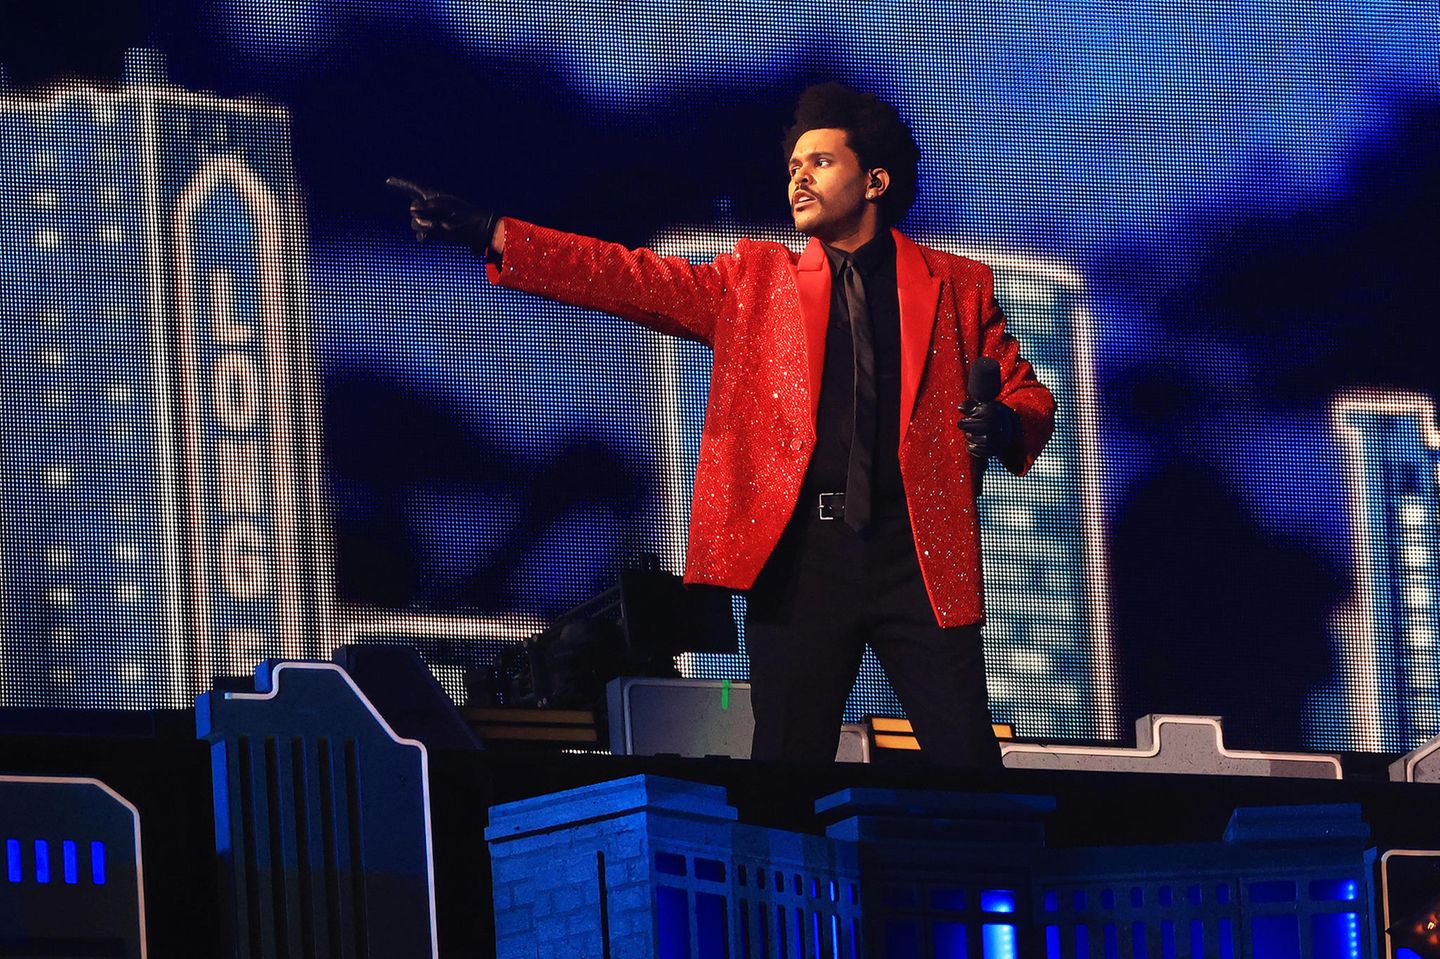 2021  In futuristisch-urbaner Kulisse performt The Weeknd beim diesjährigen Super Bowl mit lediglich 20.000 Zuschauern im Raymond James Stadium in Tampa, Florida. Sein Look ist mit knallrotem Pailletten-Blazer eher ein Look aus den Achtzigern.